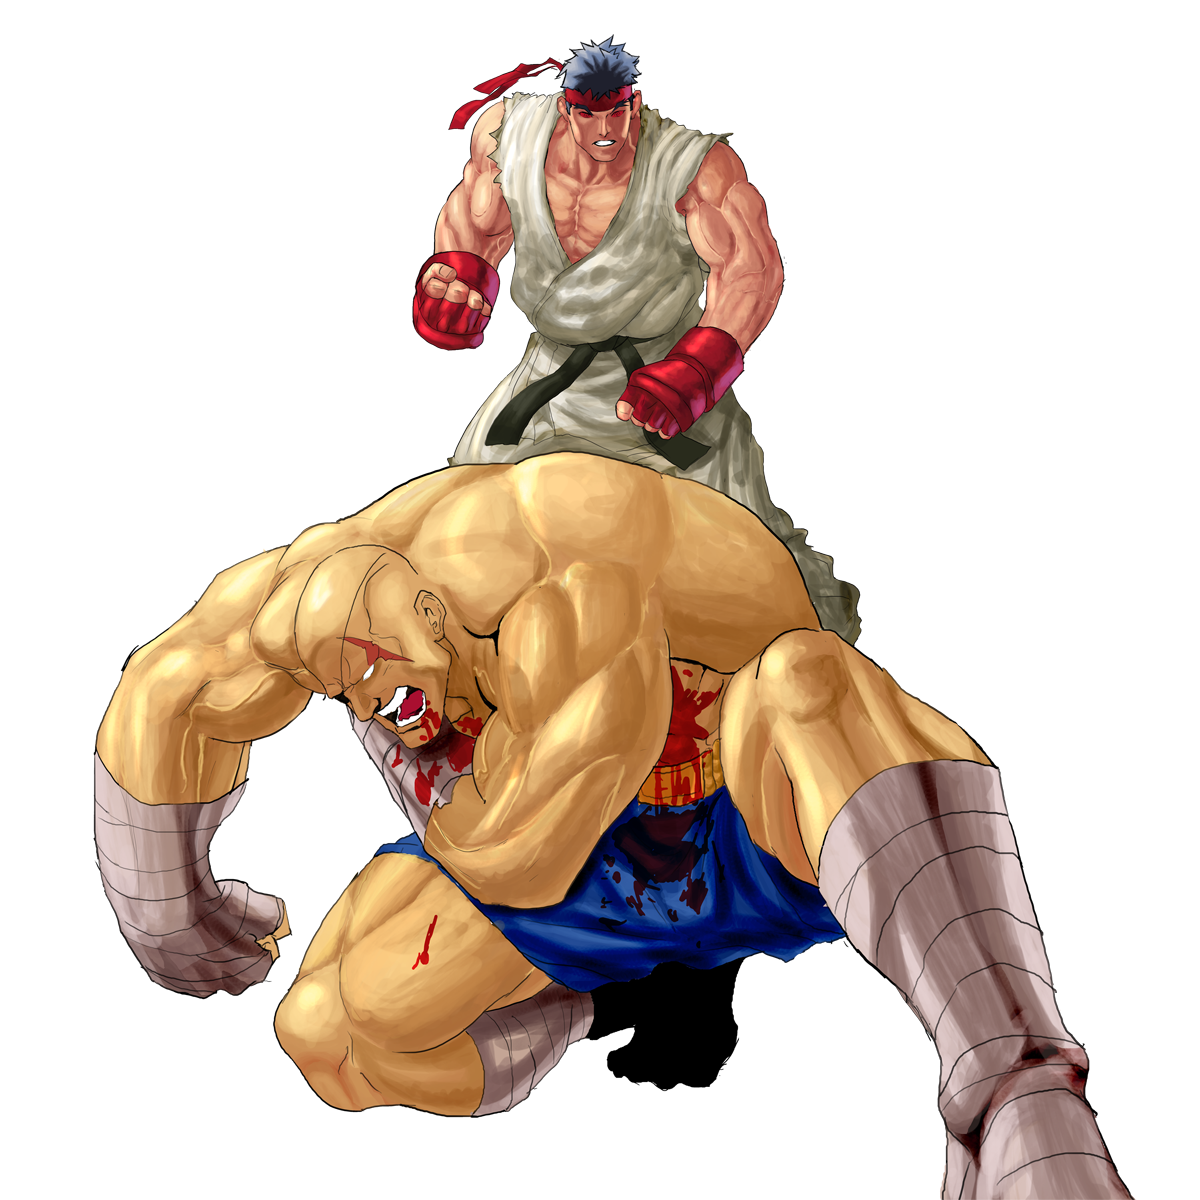 Ryu vs Sagat by Stitchking